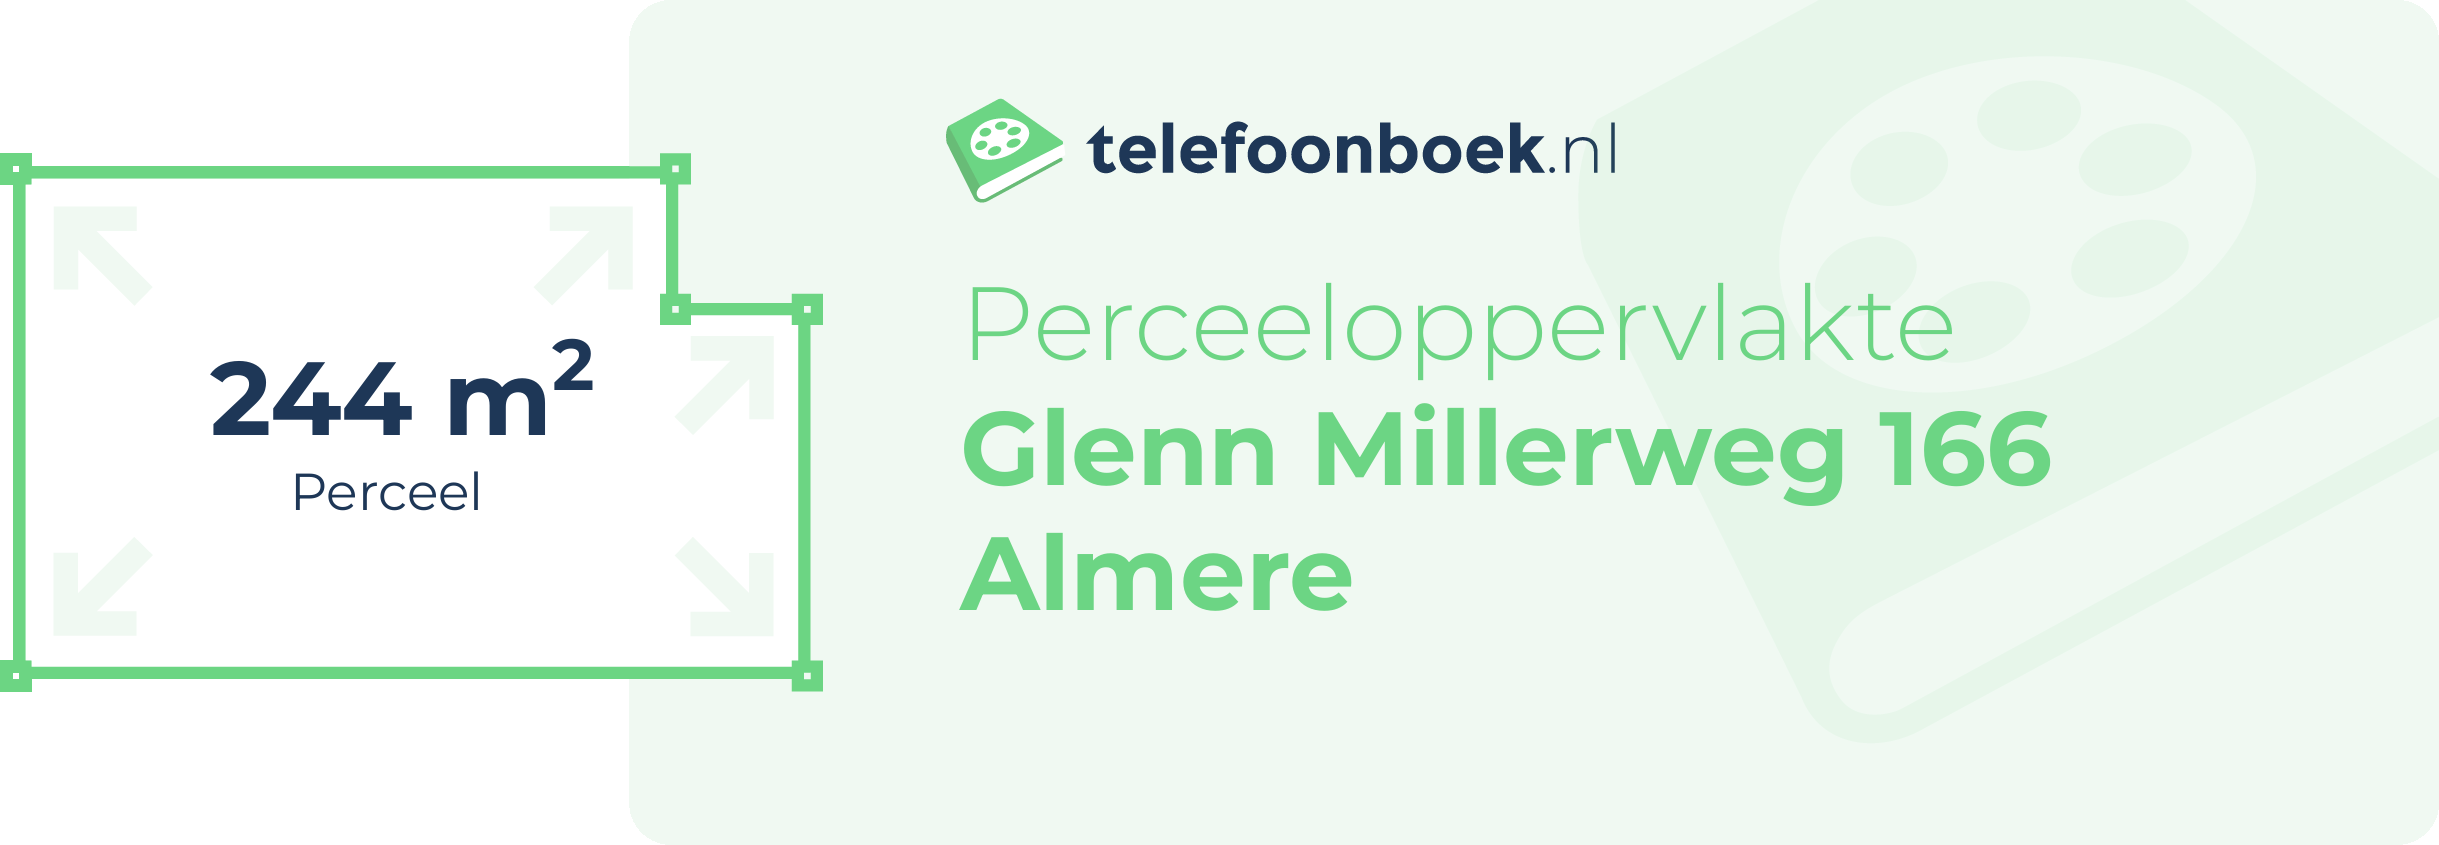 Perceeloppervlakte Glenn Millerweg 166 Almere